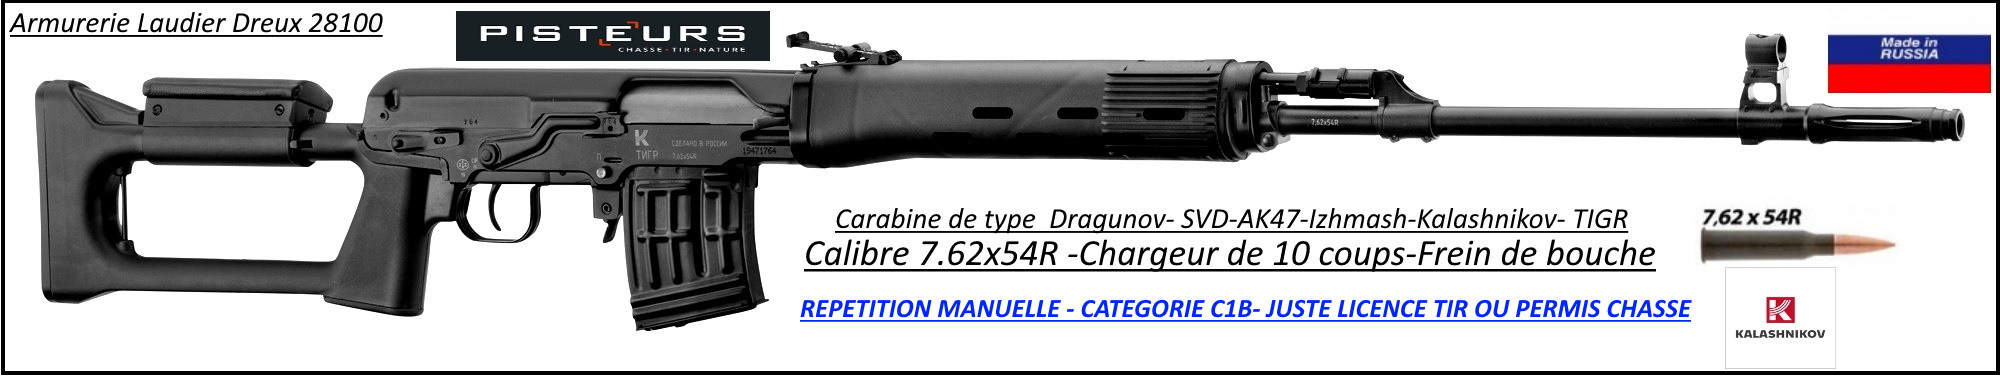 Carabine Izmash Kalashnikov AK47 TIGR SVD Calibre 7.62x54R REPETITION MANUELLE canon 620 mm Type DRAGUNOV-Catégorie C1B-Ref ZE1235